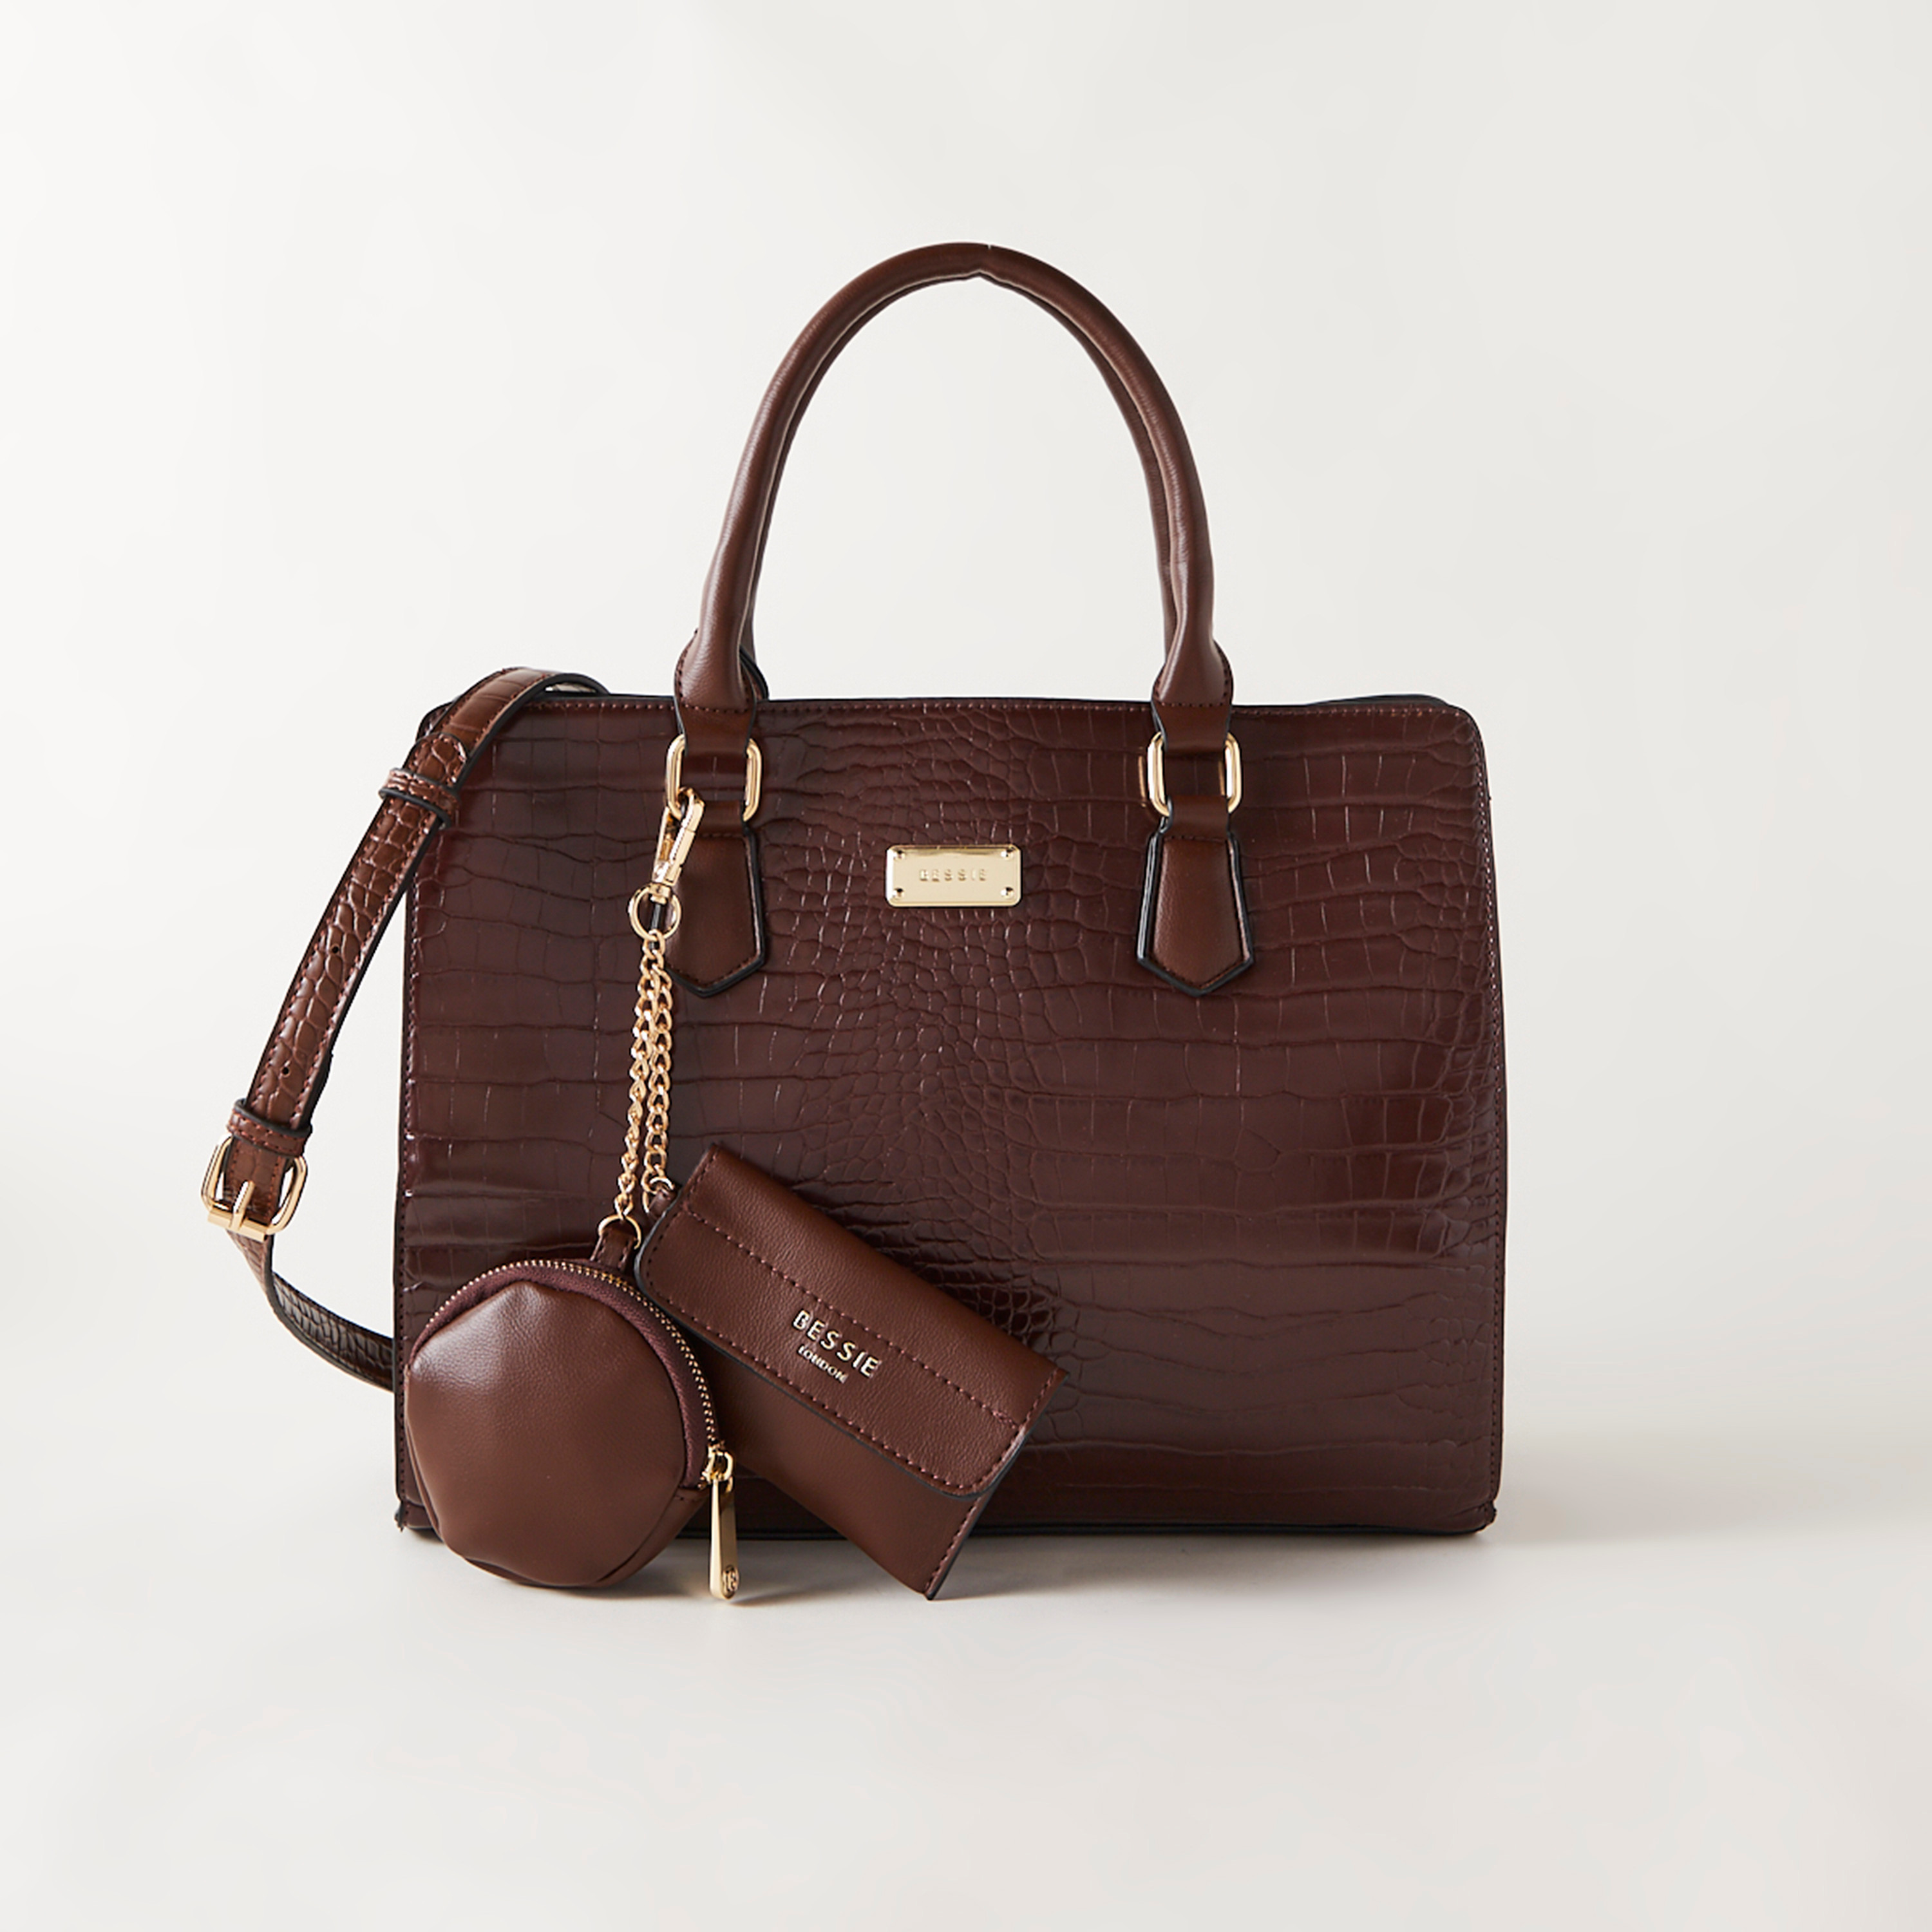 Bessie Handbags & Accessories | DJV Boutique, Ipswich